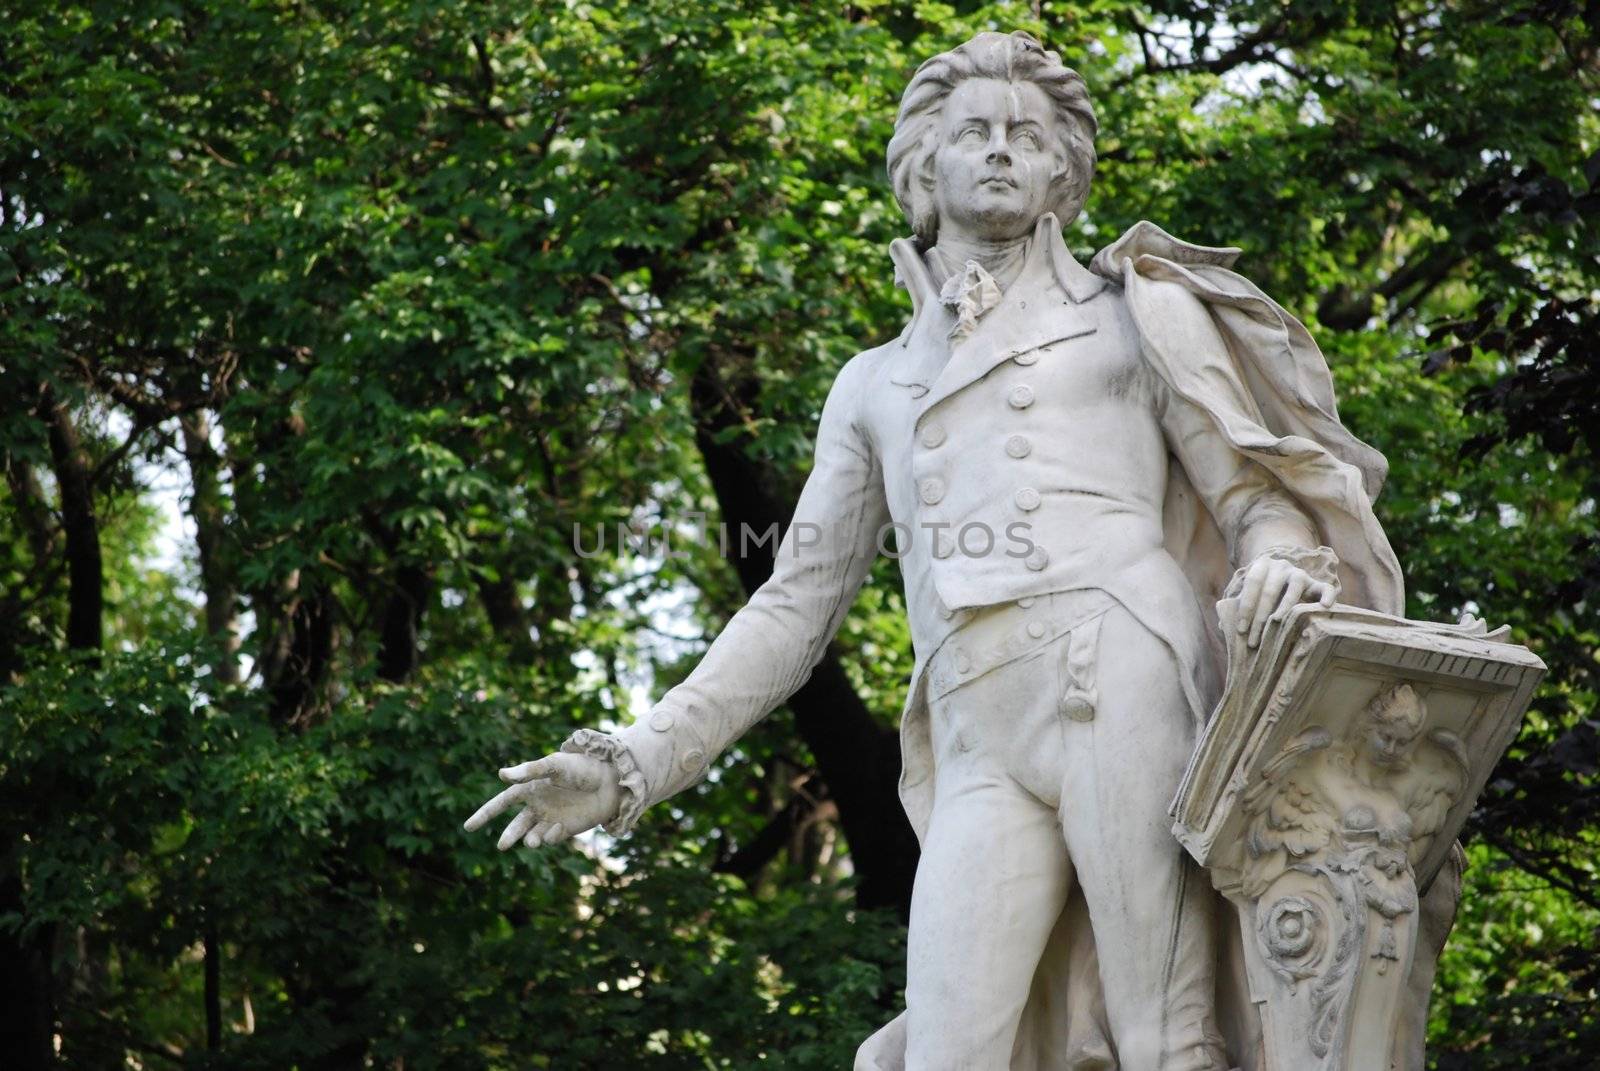 Statue of Mozart in the burggarten, Vienna